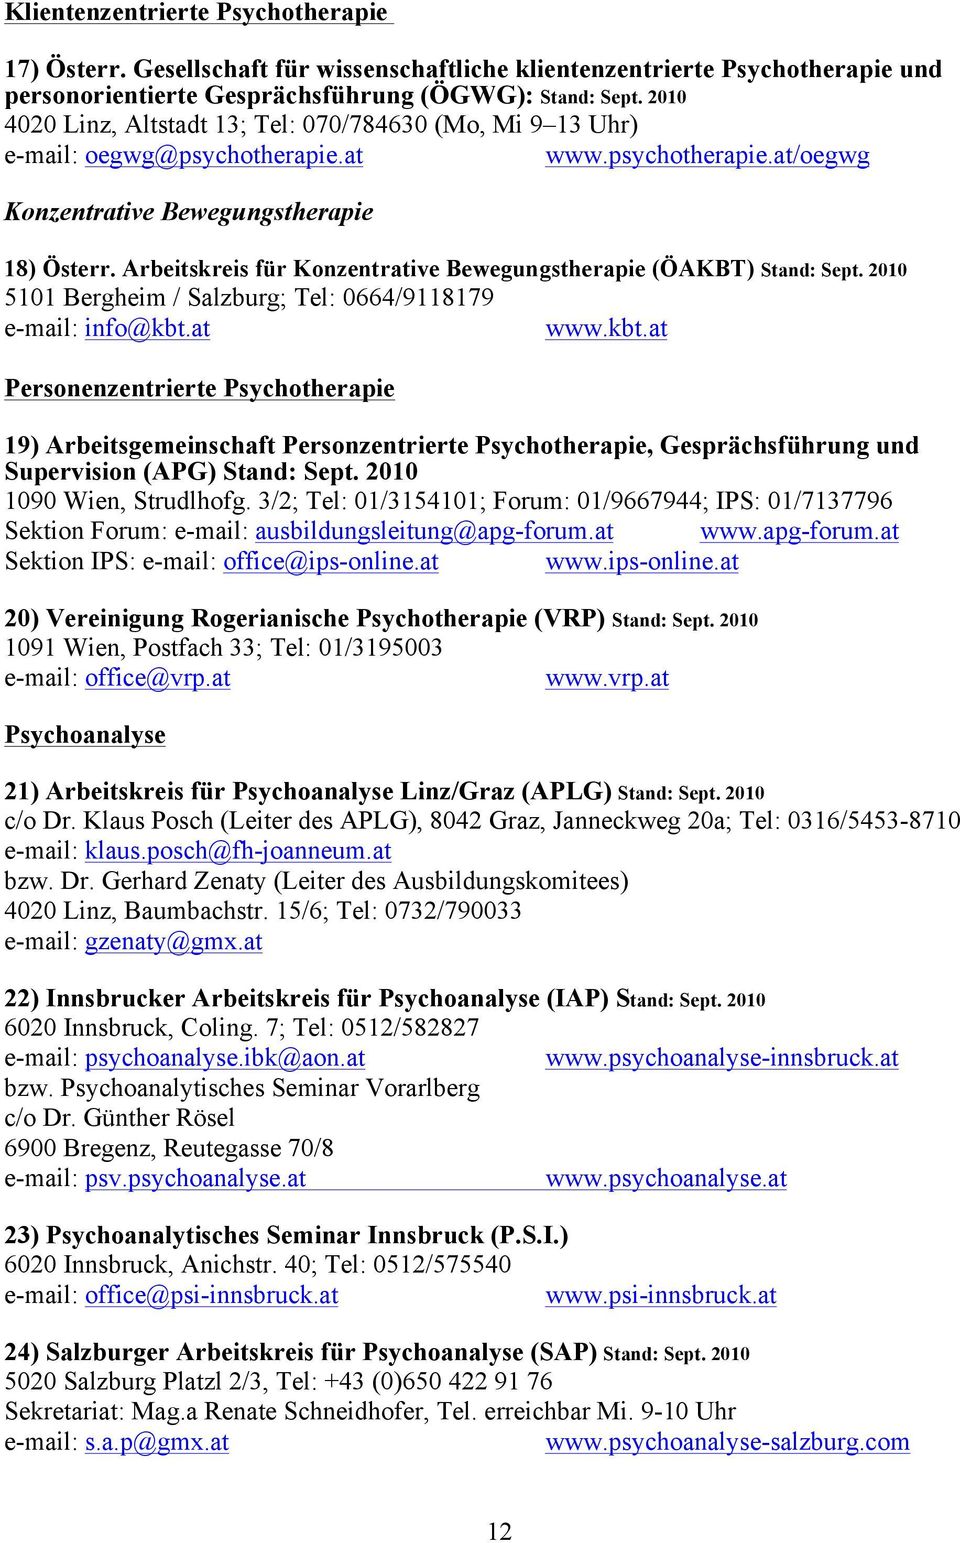 Arbeitskreis für Konzentrative Bewegungstherapie (ÖAKBT) Stand: Sept. 2010 5101 Bergheim / Salzburg; Tel: 0664/9118179 e-mail: info@kbt.